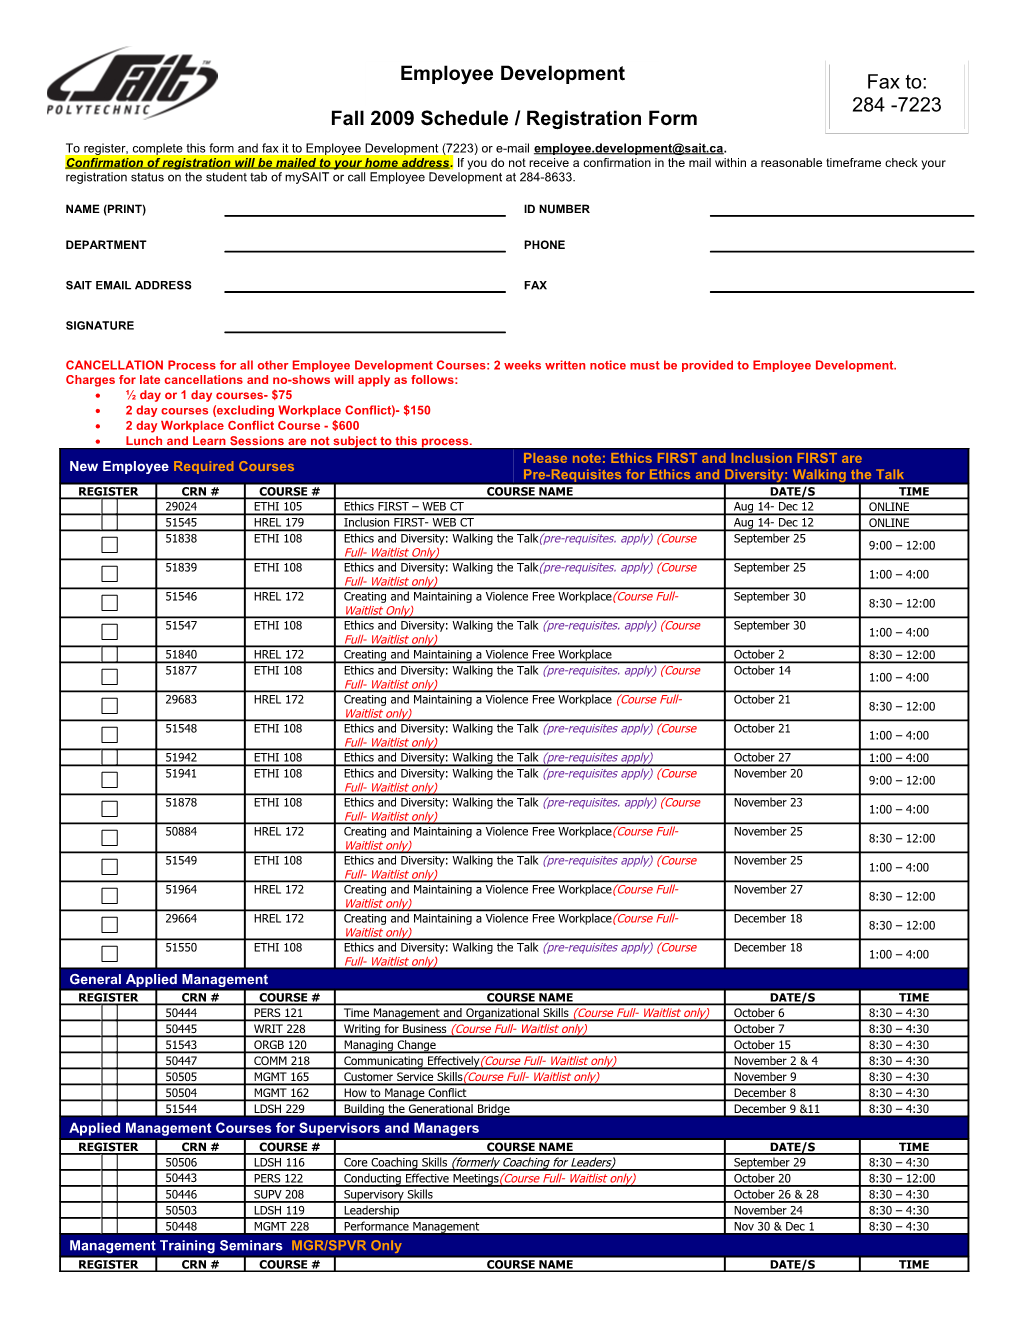 2007-2008 Schedule / Registration Form